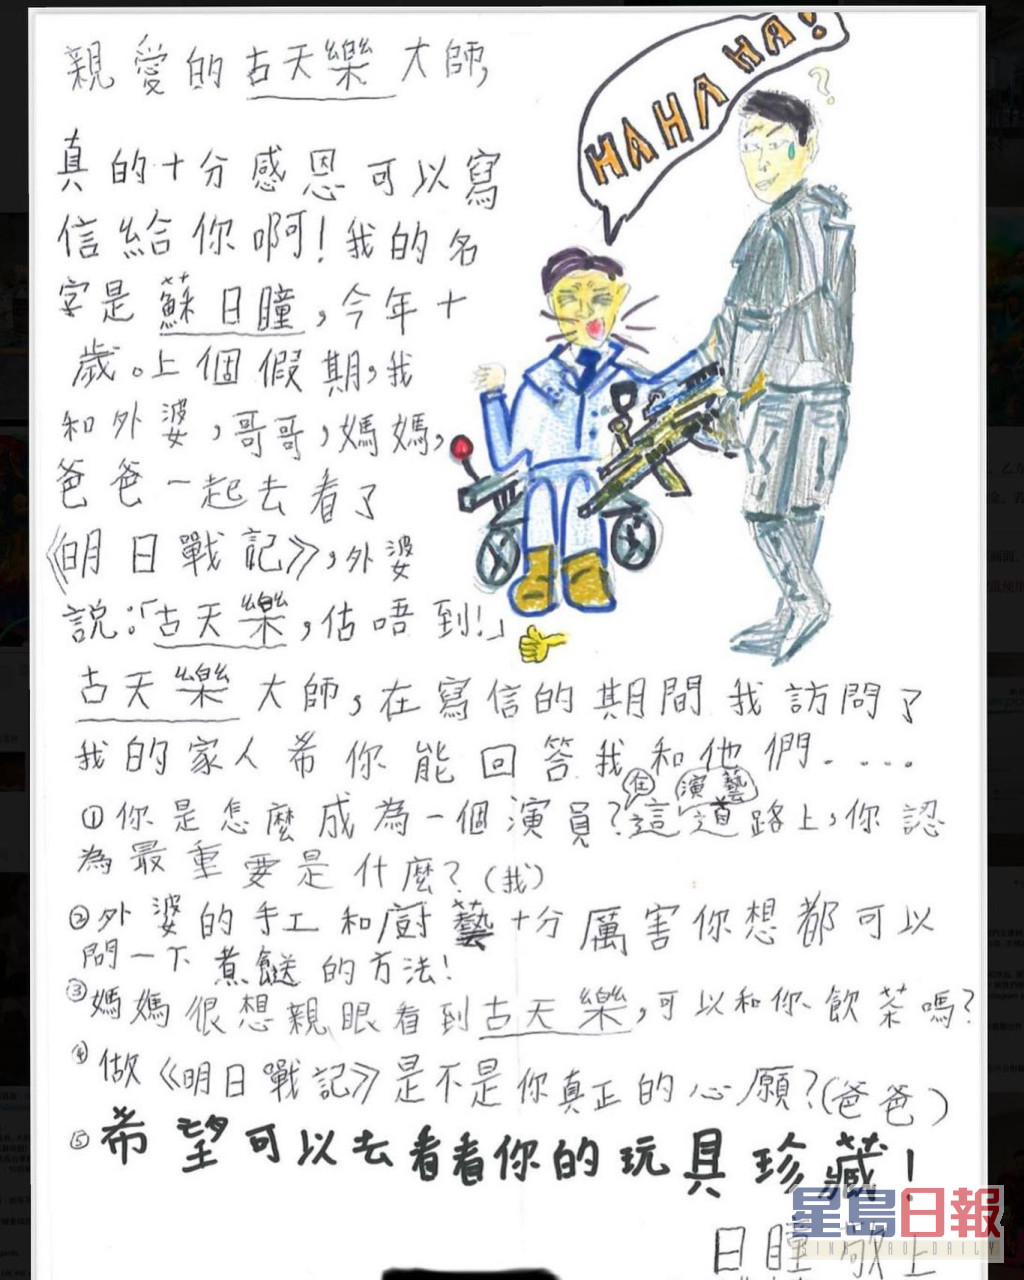 古天樂收到蘇小朋友的來信，信上還畫有《明日戰記》中的古仔和張家輝。